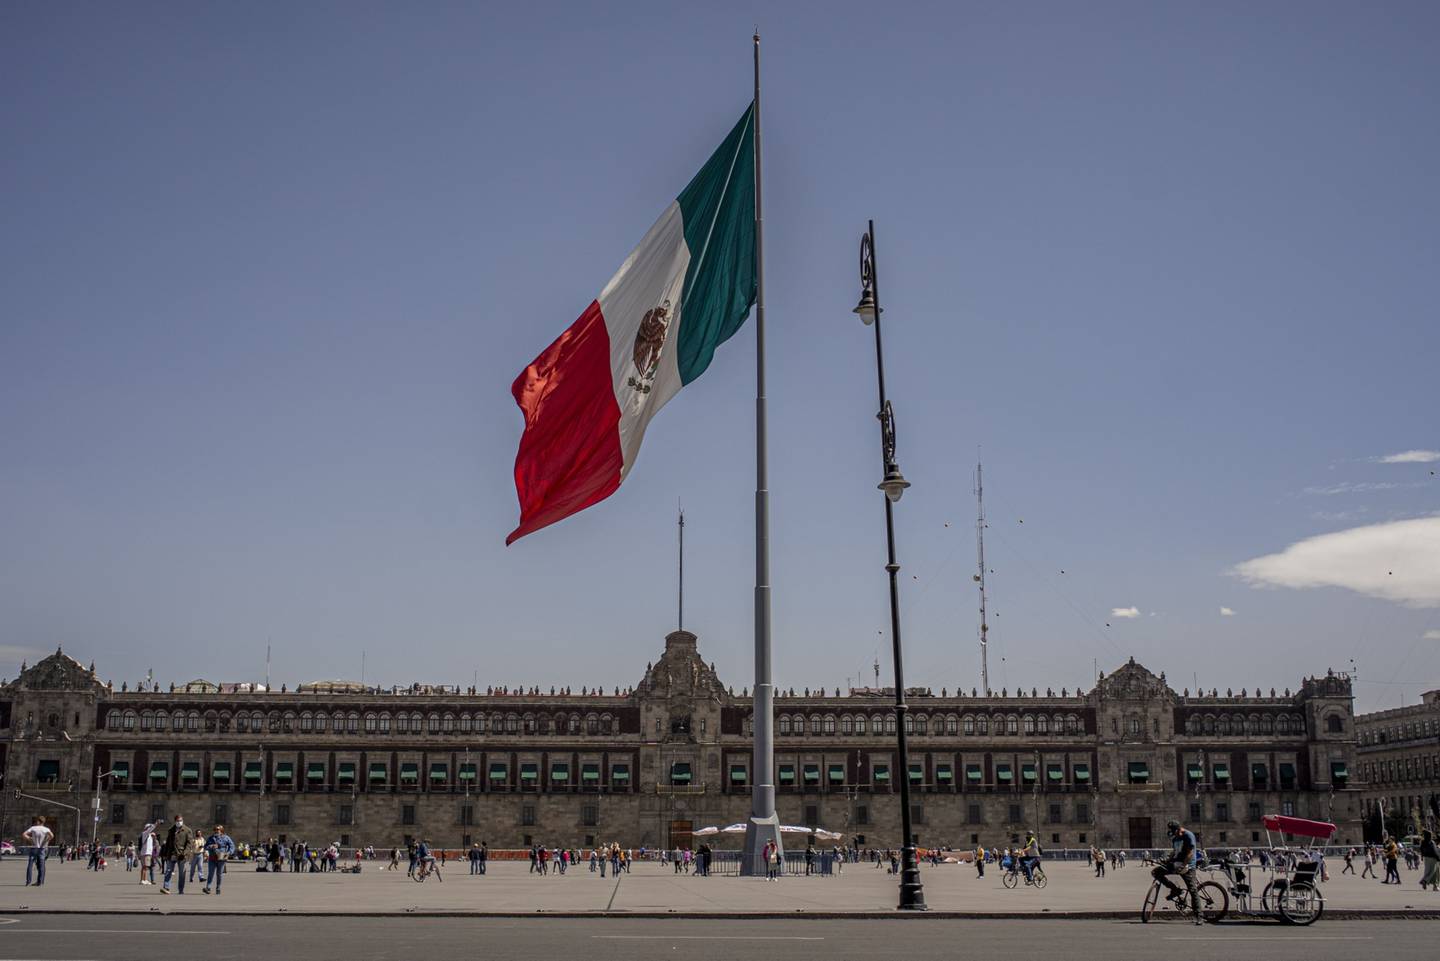 Una bandera mexicana ondea en la Plaza de la Constitución, conocida como Zócalo.dfd